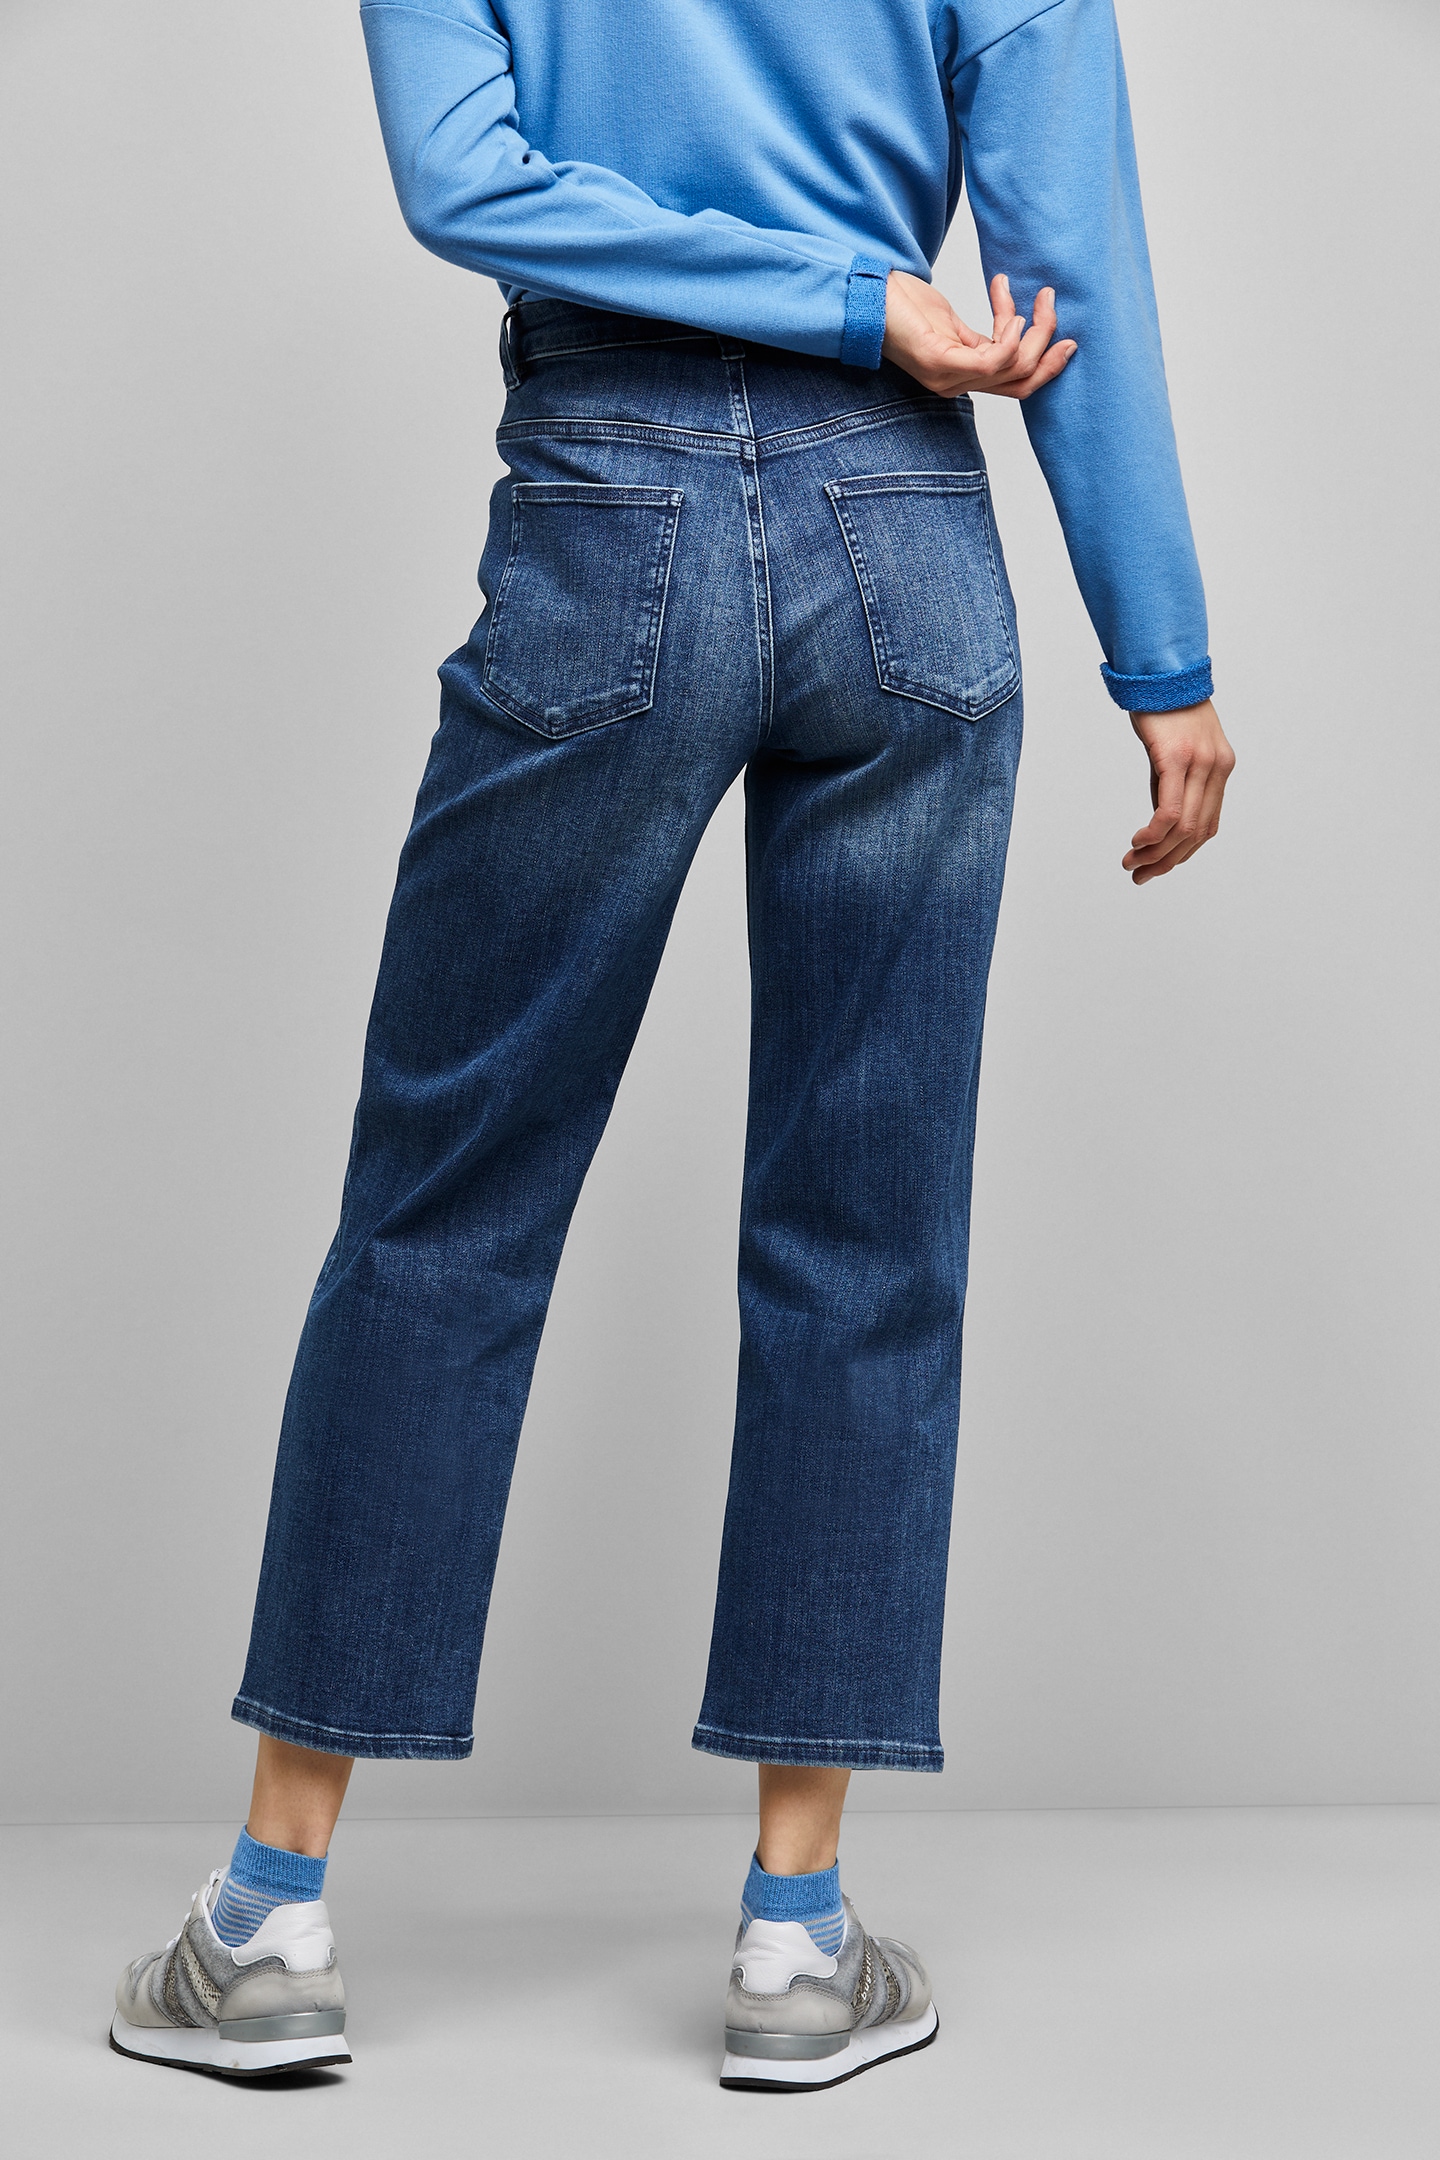 online Relax bugatti kaufen in Jelmoli-Versand 5-Pocket-Jeans, Baumwollware aus elastischer bei Fit Schweiz